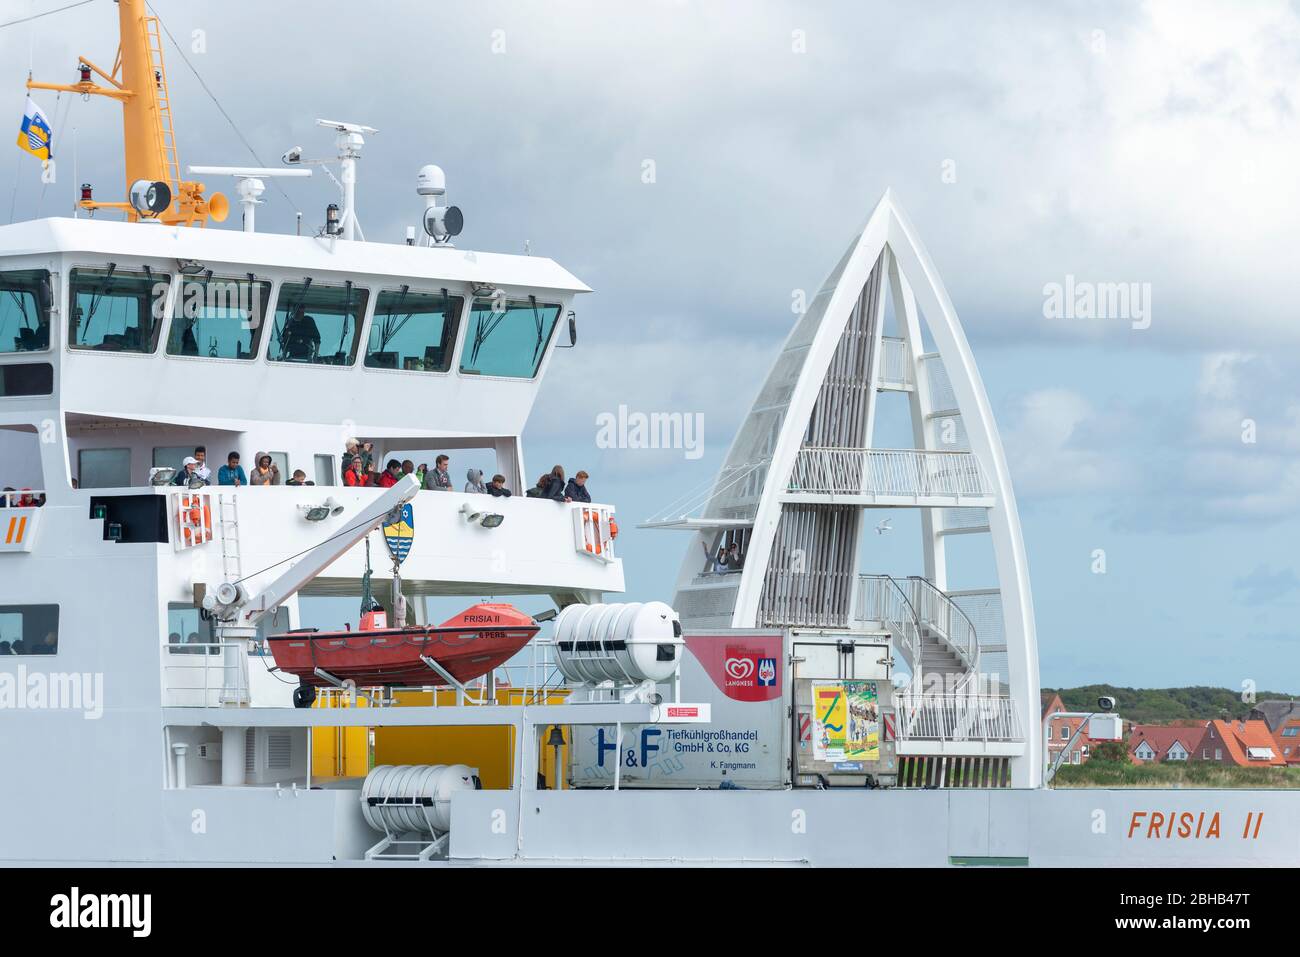 Germania, bassa Sassonia, Frisia Est, Juist, traghetto della compagnia di navigazione Frisia. Foto Stock